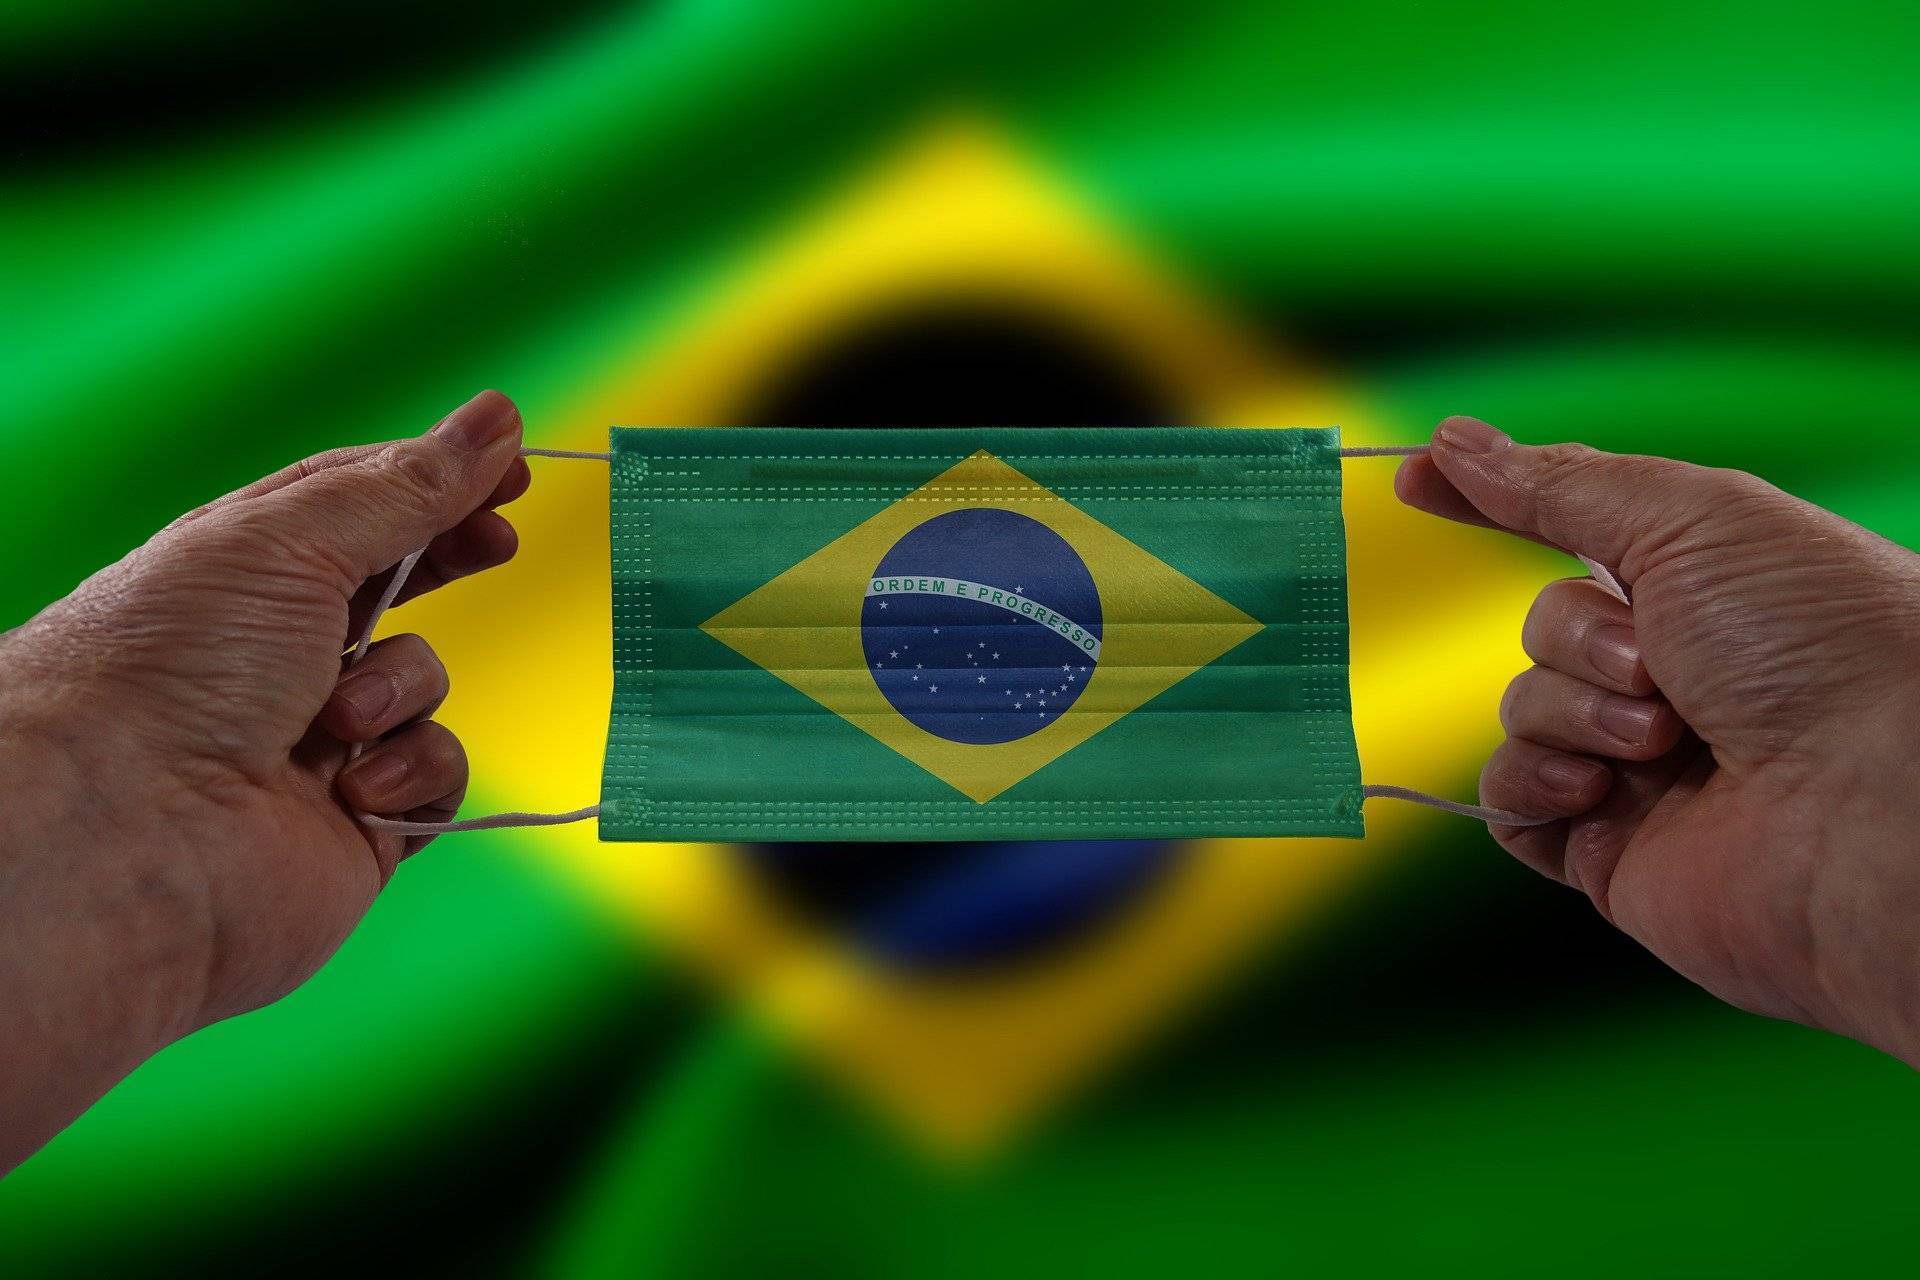 Brésil : Et si on remettait les choses à l’endroit ?
Crédit photo : Pixabay